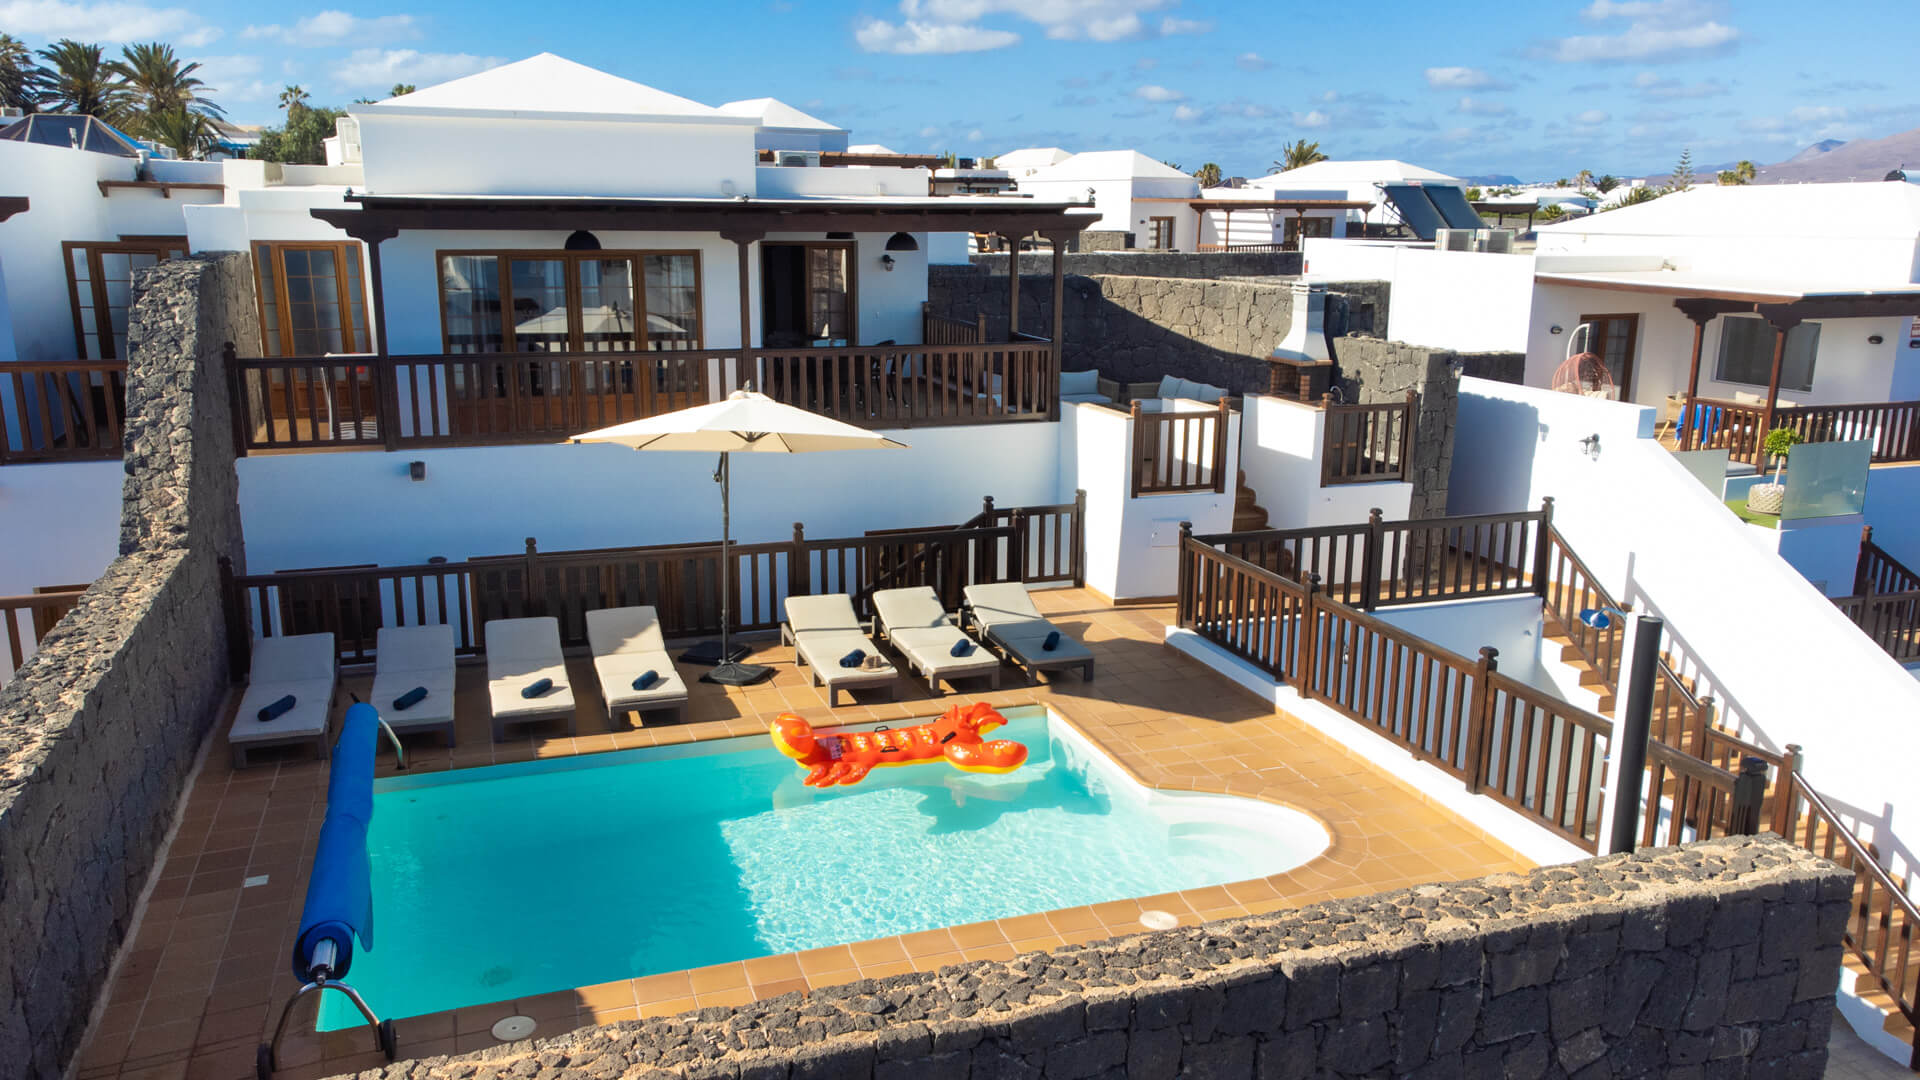 Villas in Lanzarote with private pool - Villa Vista Rey - 6 Bedrooms